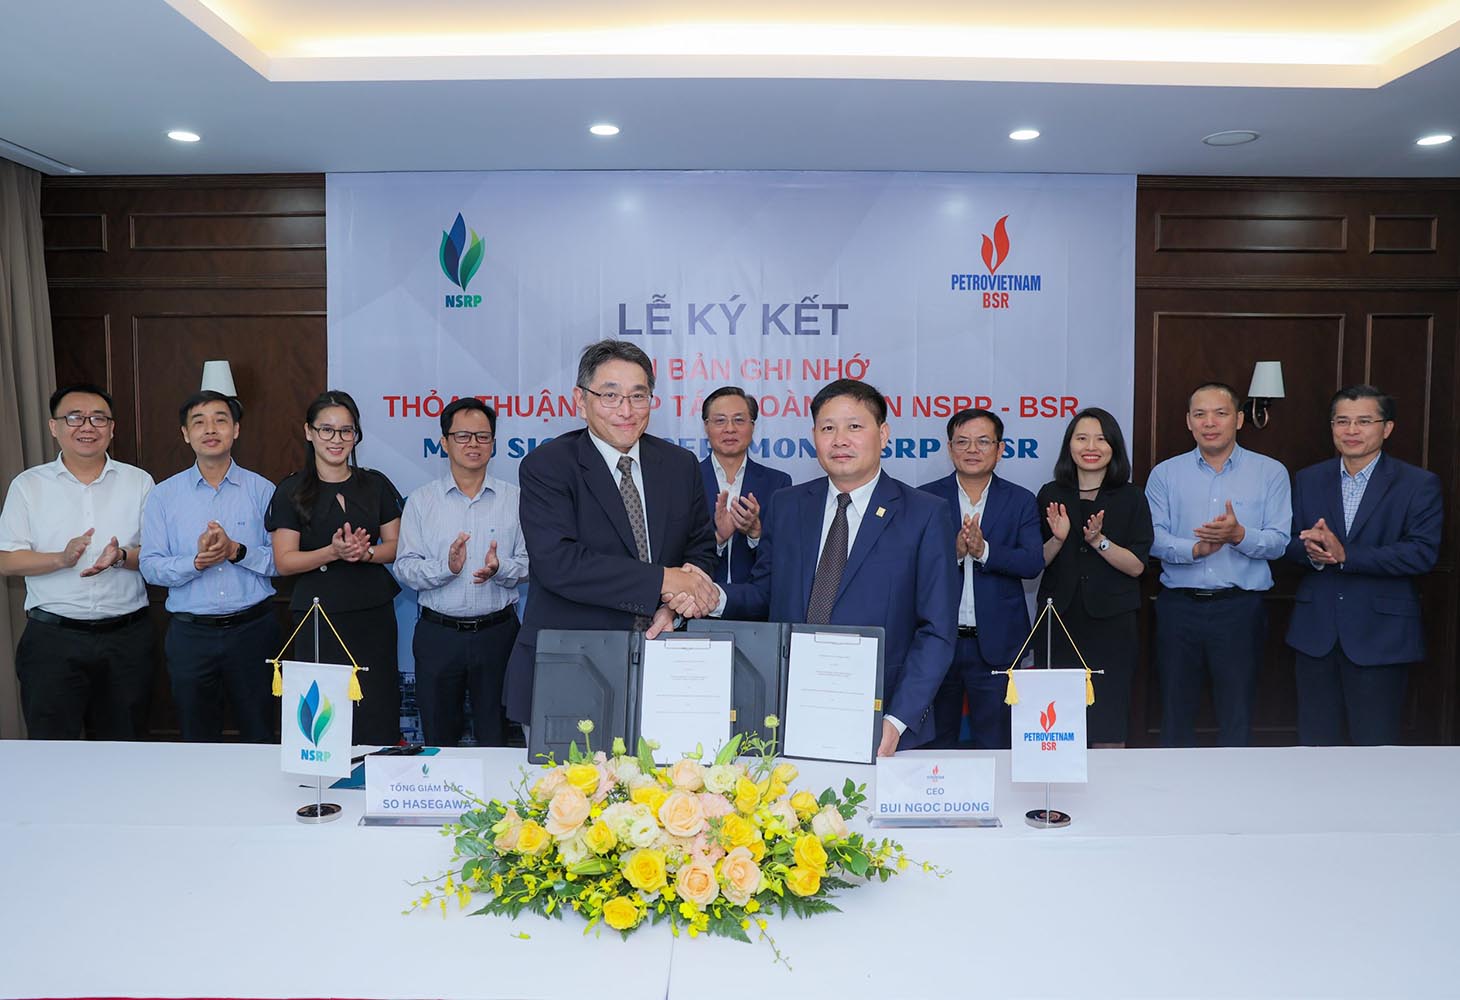 Vietnam refineries strengthen ties for sustainable development